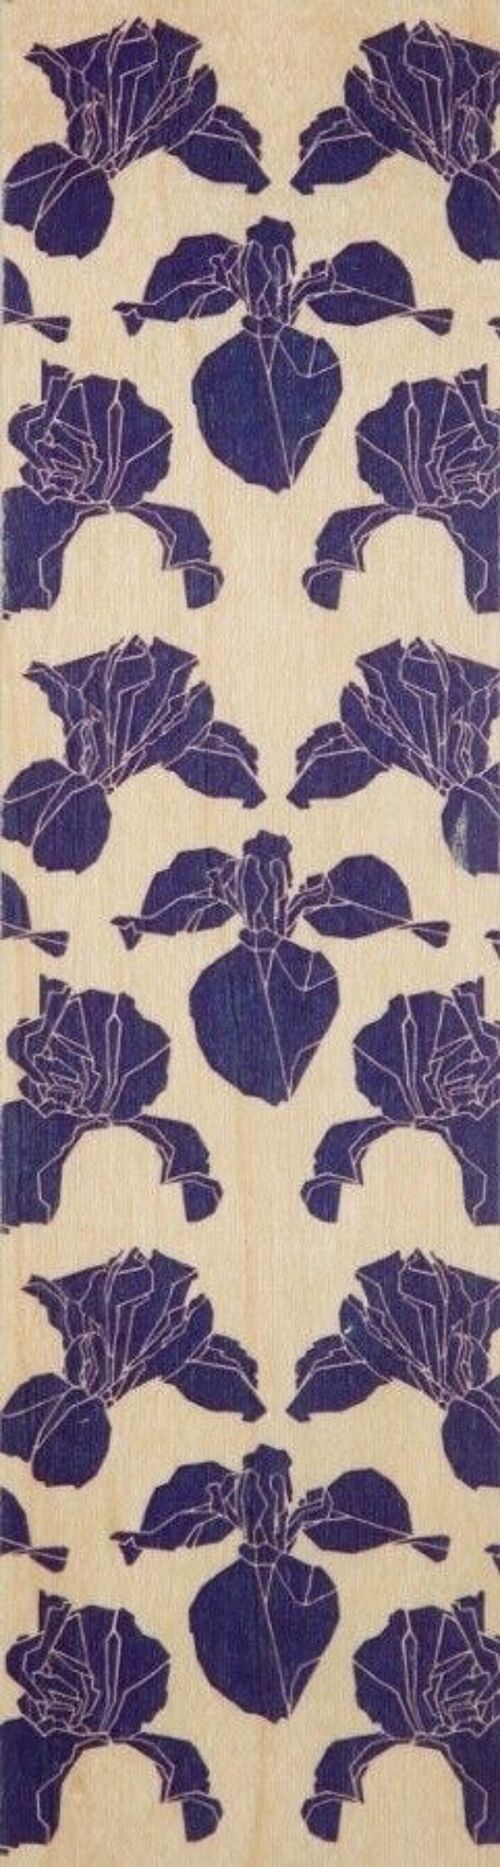 Marque-pages en bois - flowers iris